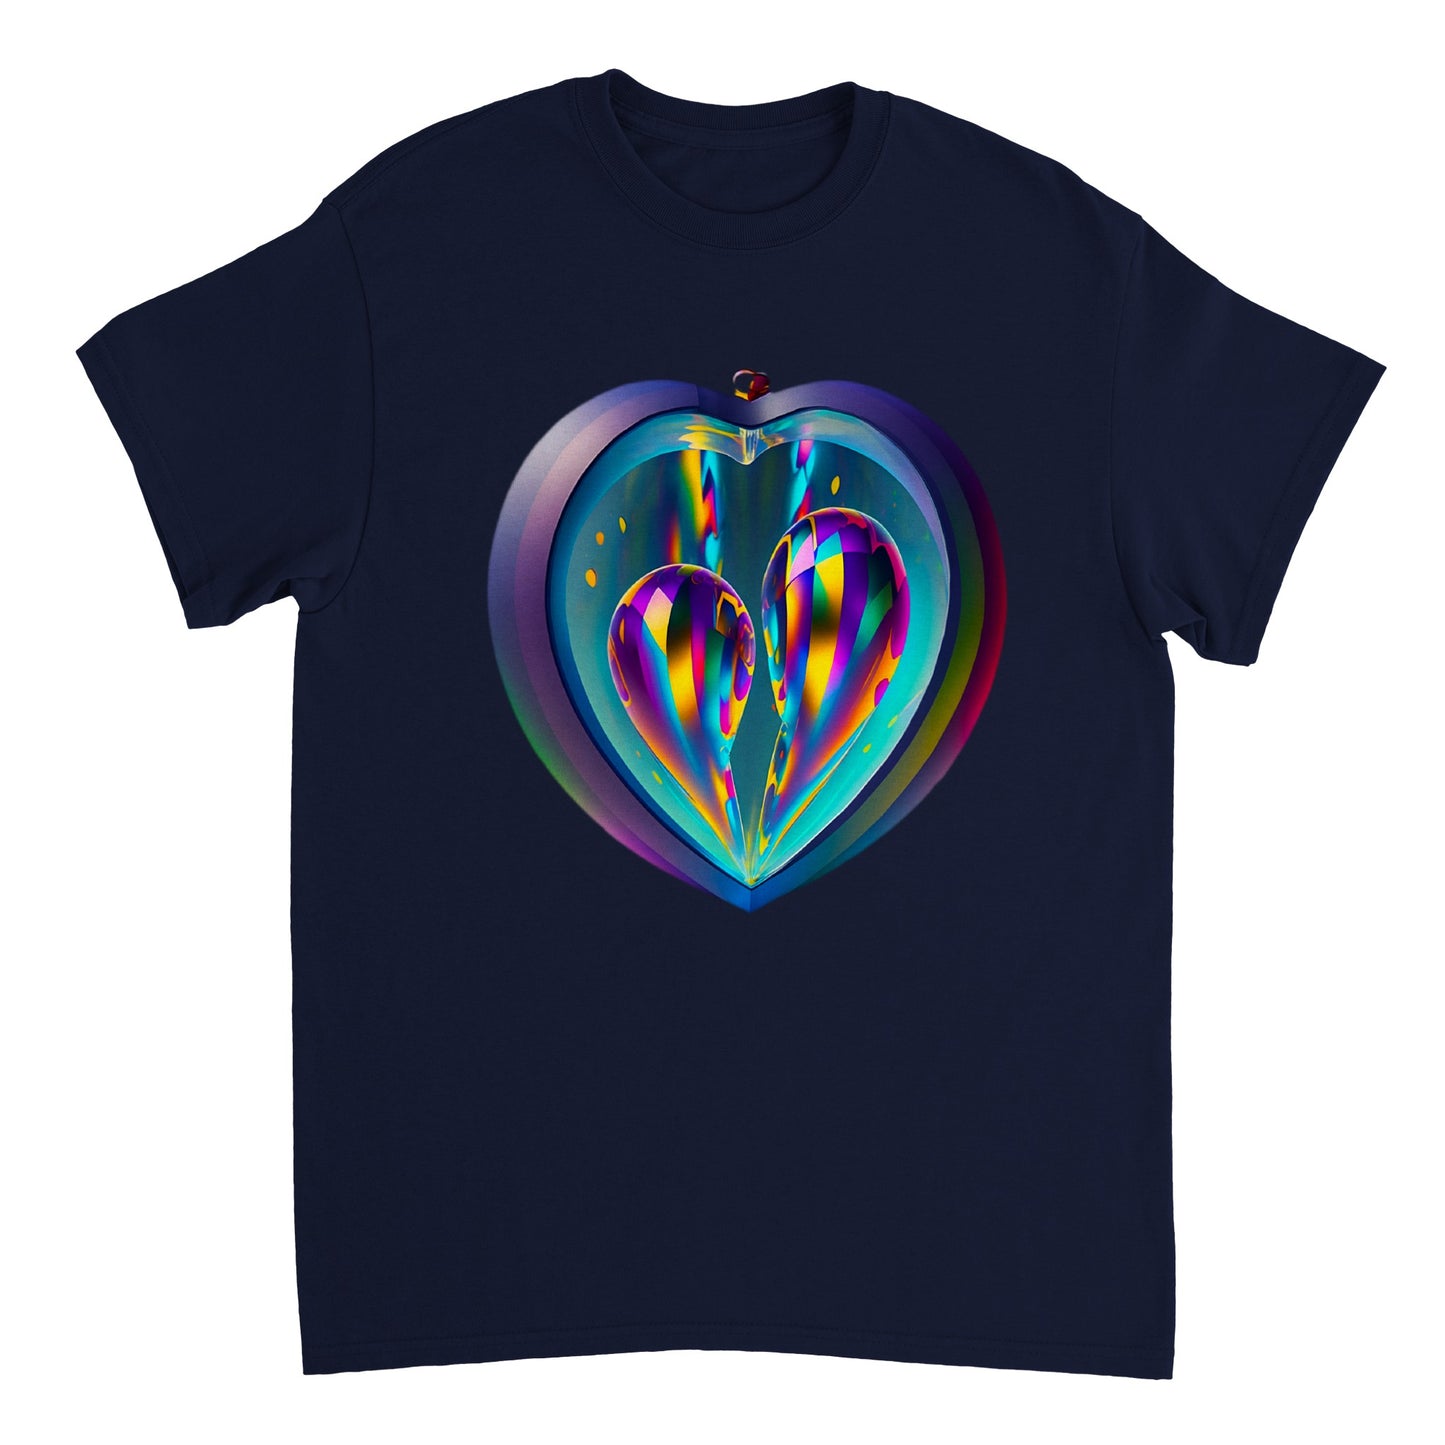 Love Heart - Heavyweight Unisex Crewneck T-shirt 61